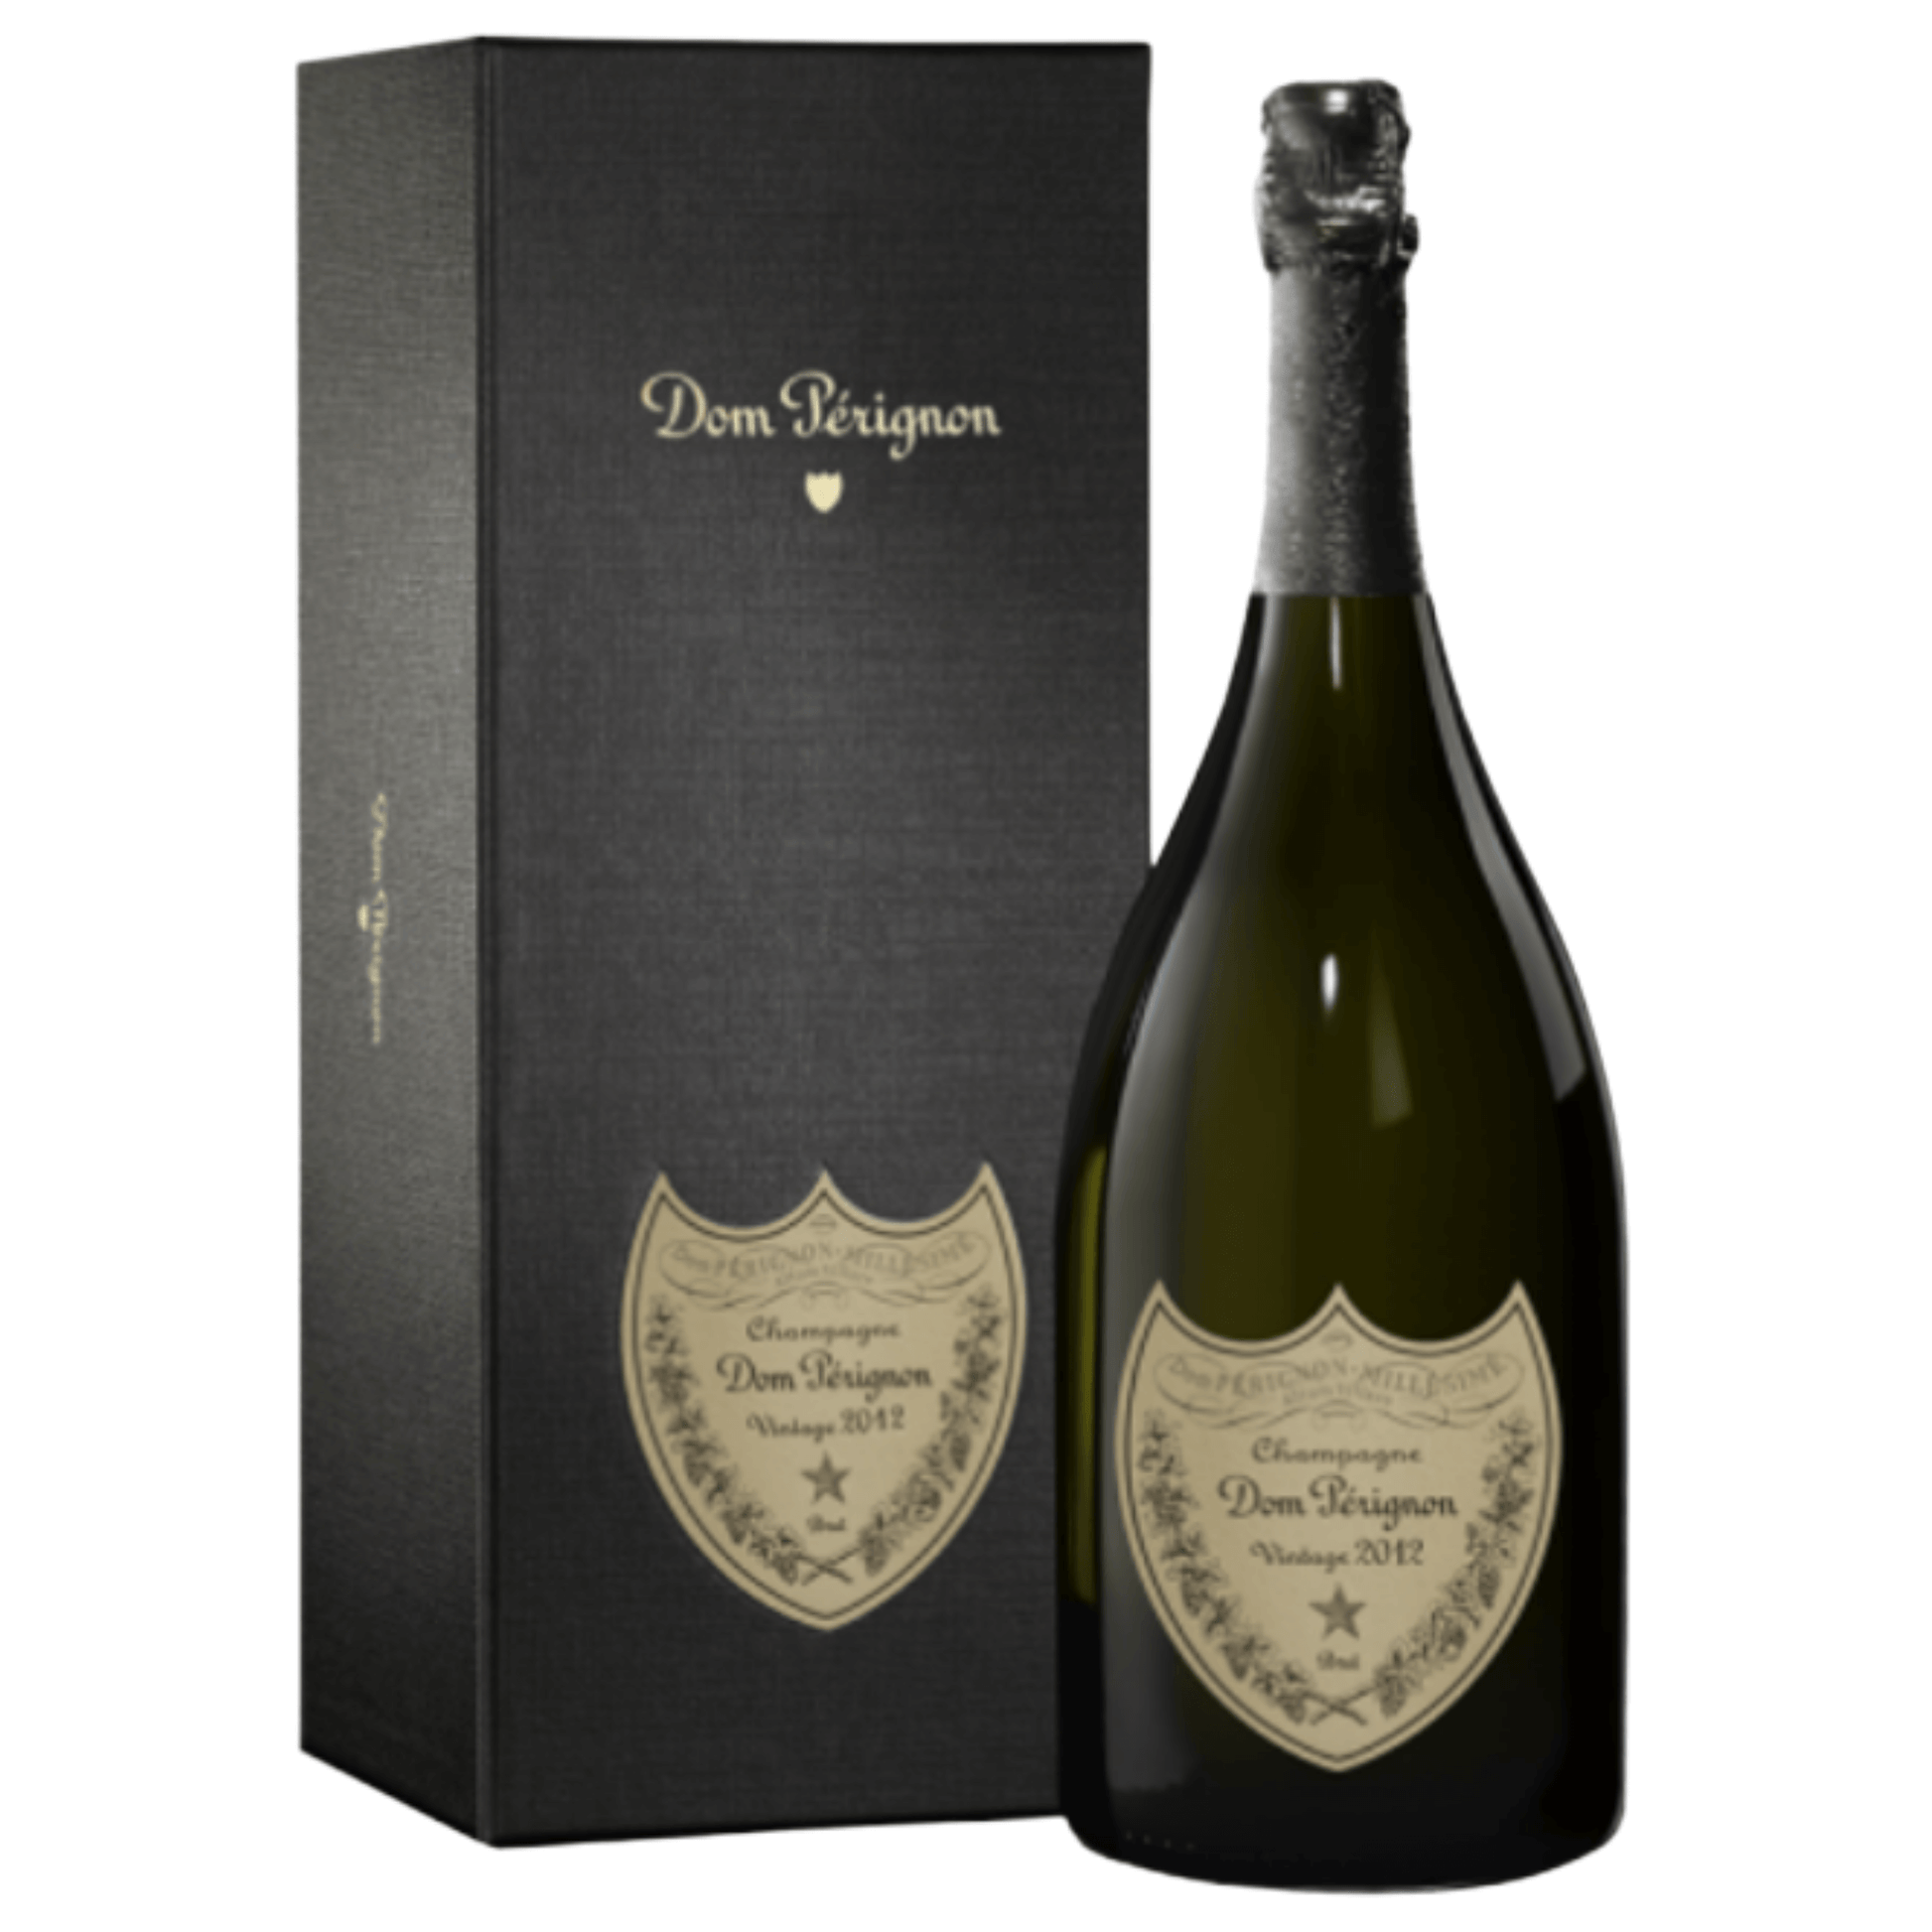 Bottiglia di Champagne Dom Perignon 2012 Vintage da 0,75 l con astuccio.